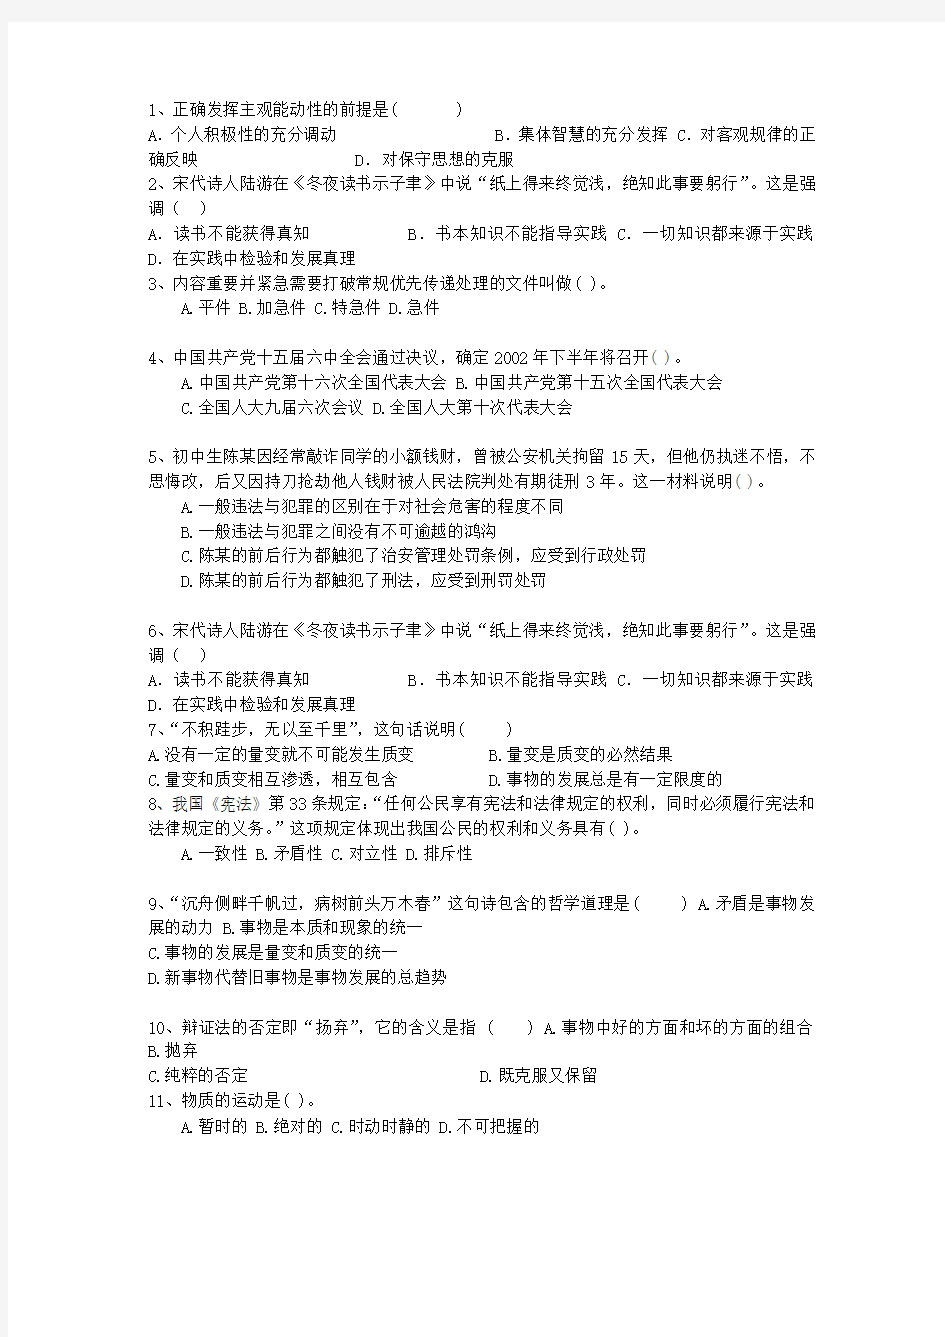 2015江苏省直属事业单位考试公共基础知识(必备资料)